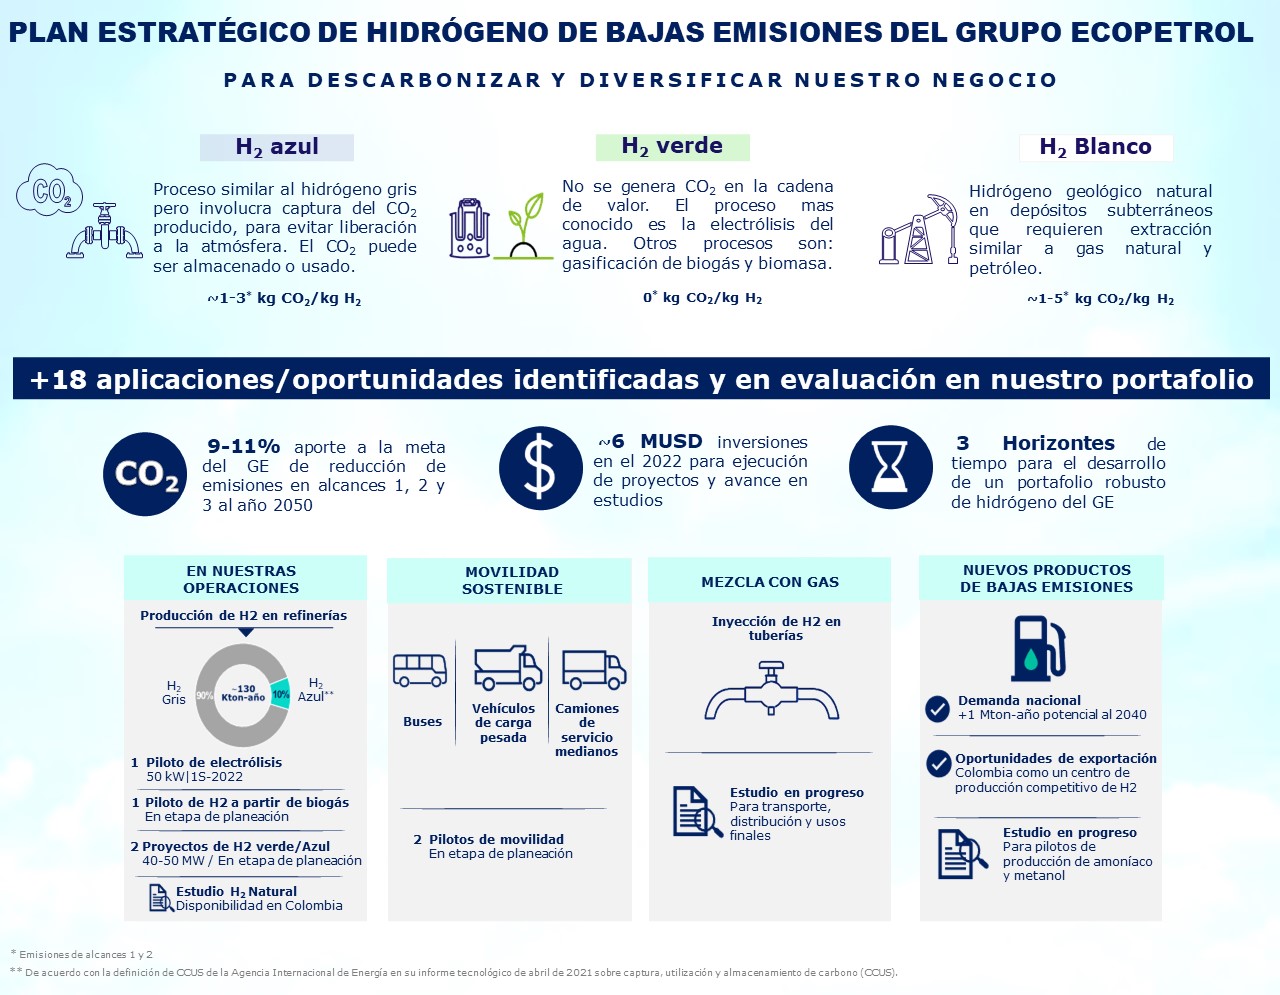 Plan estratégico de hidrógeno de bajas emiisiones del Grupo Ecopetrol